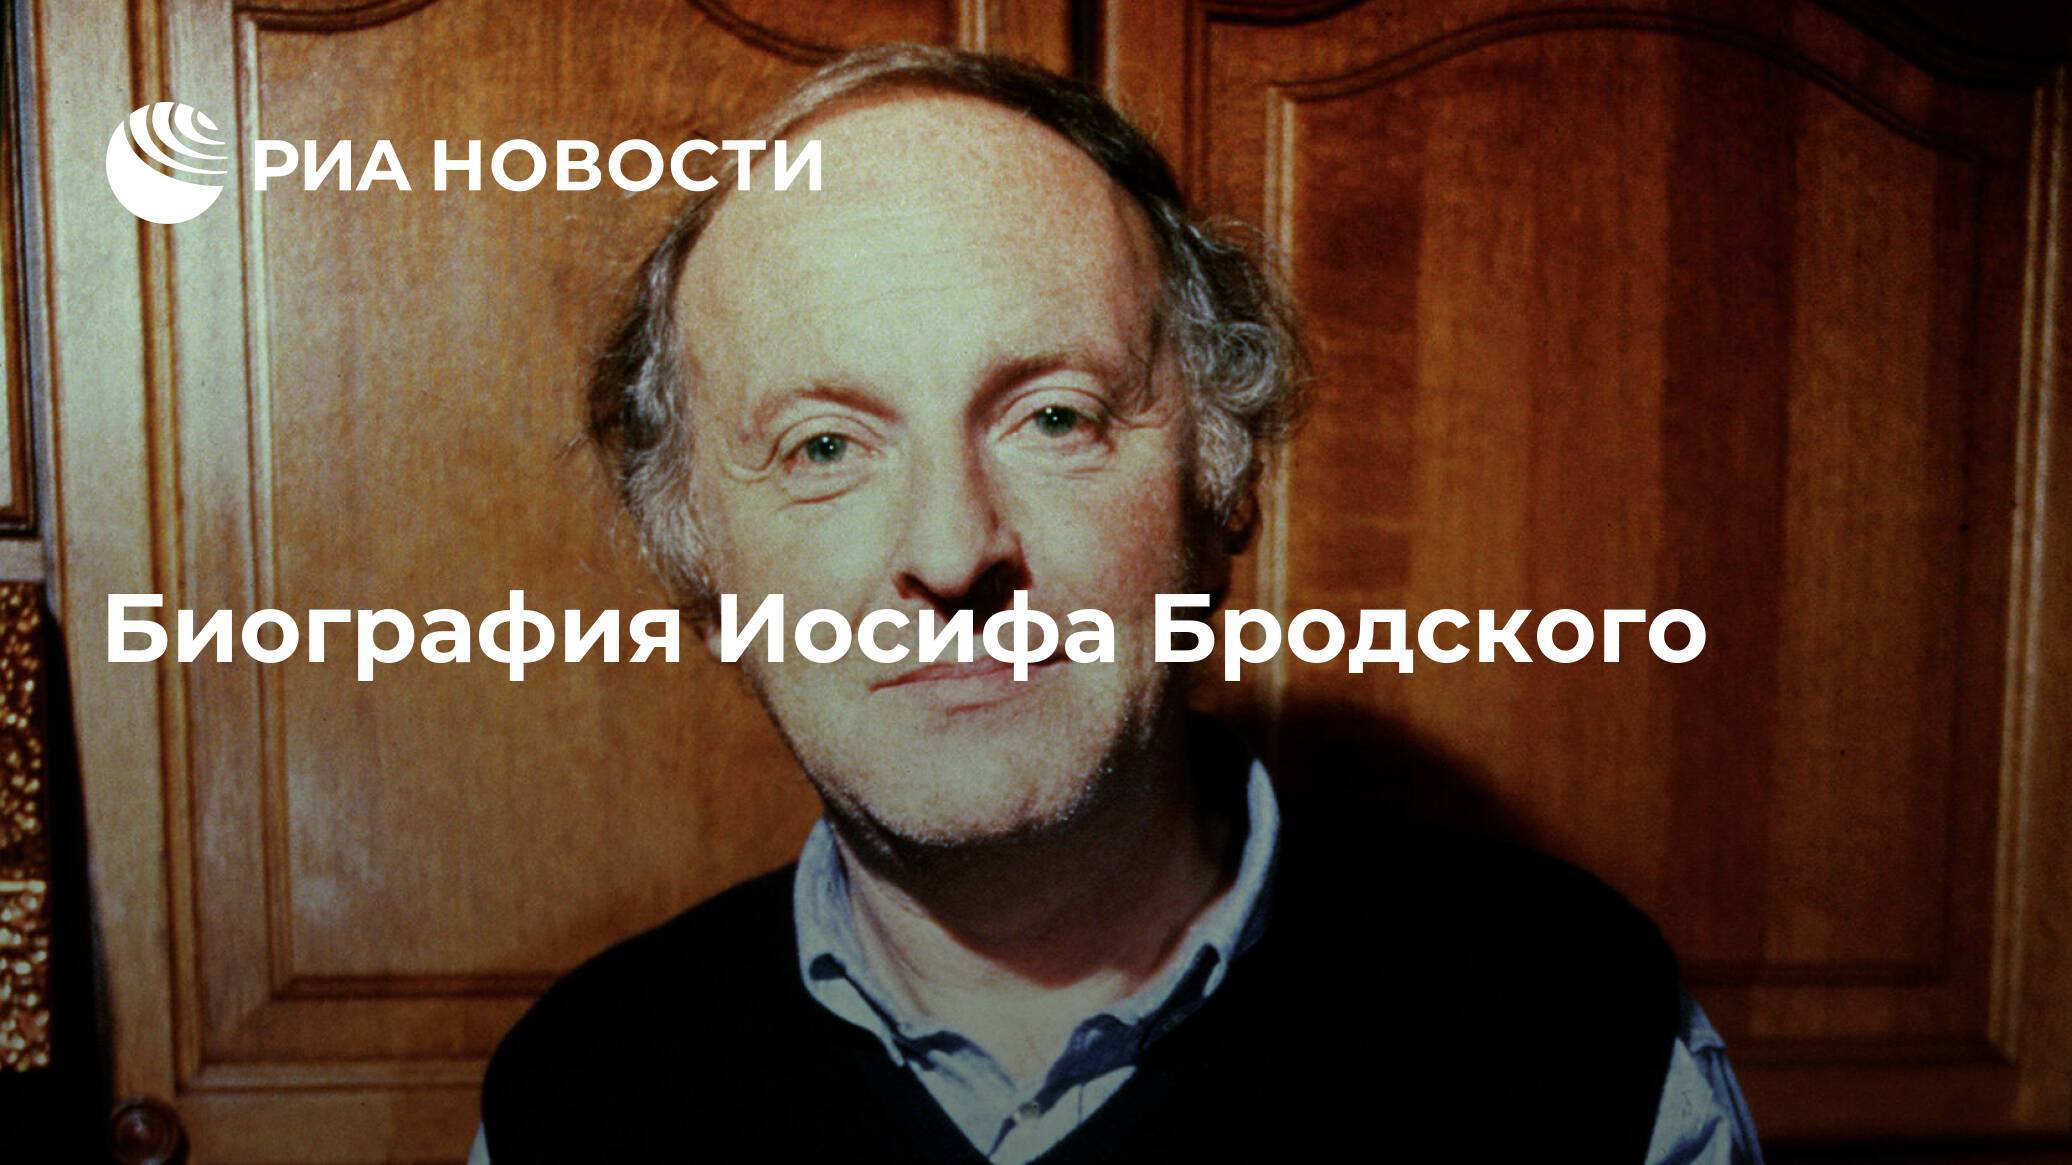 Бедрос киркоров - биография, информация, личная жизнь, фото, видео